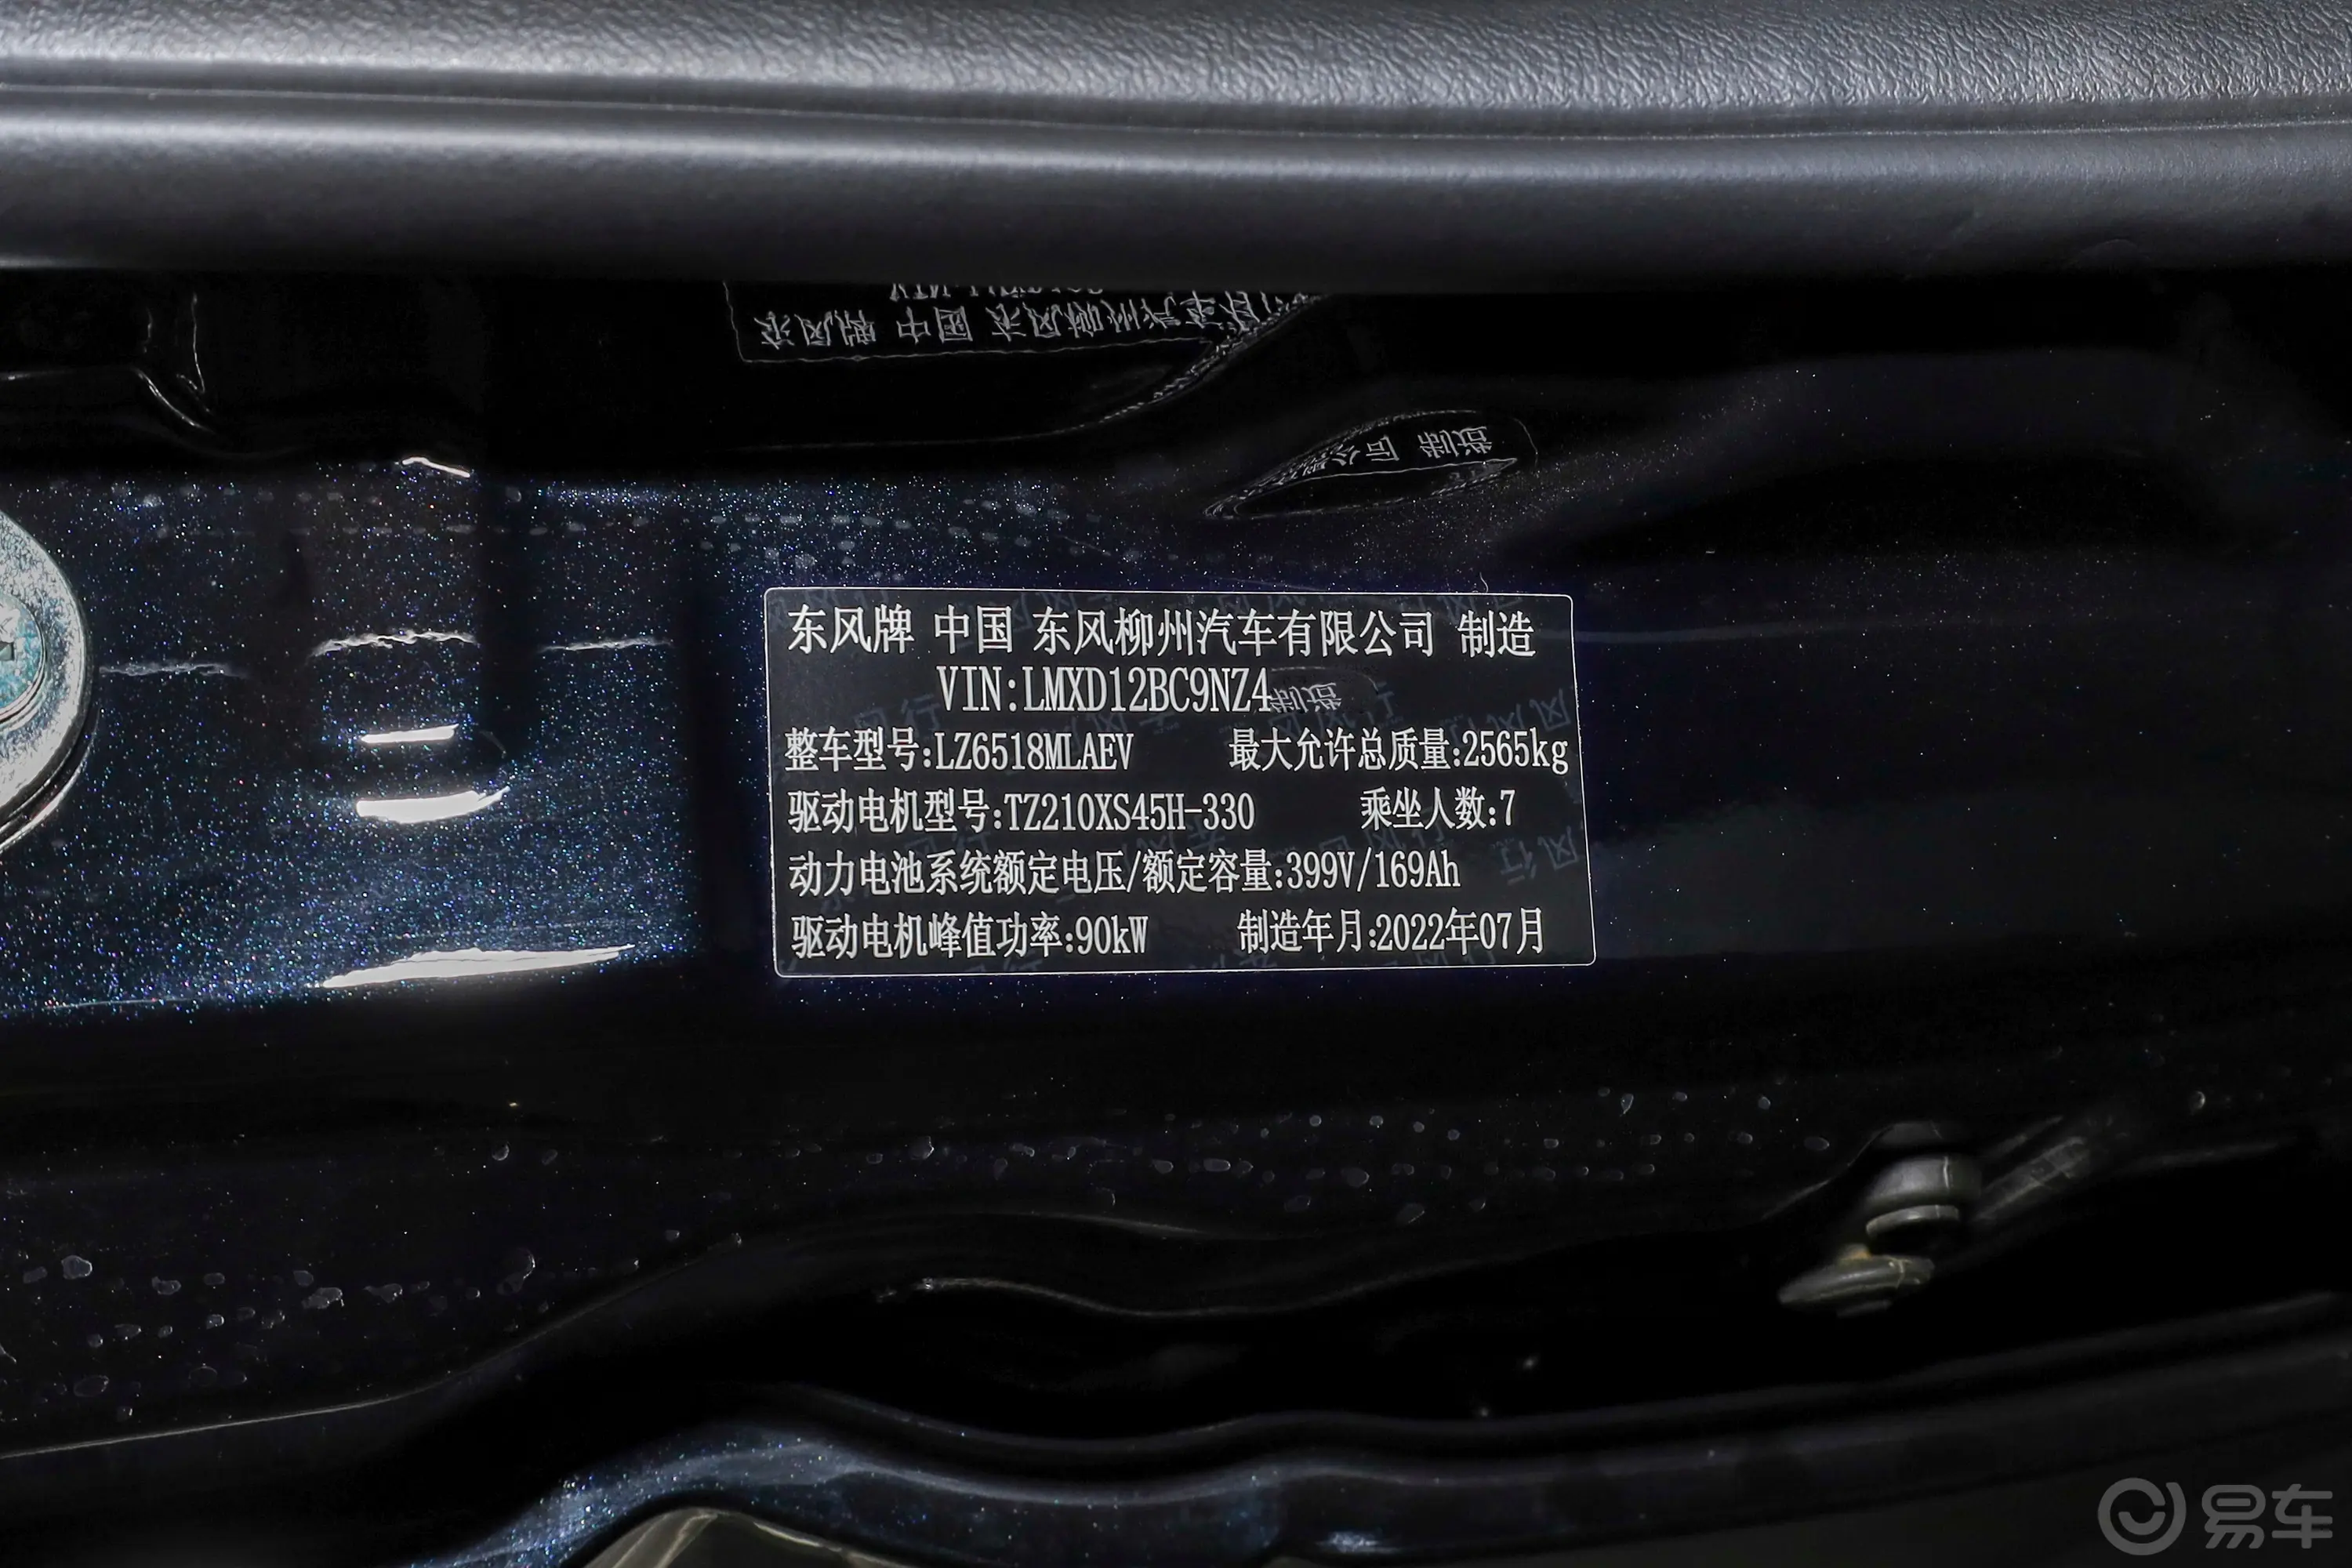 菱智M5 EV客运版 401km 豪华型 7座车辆信息铭牌